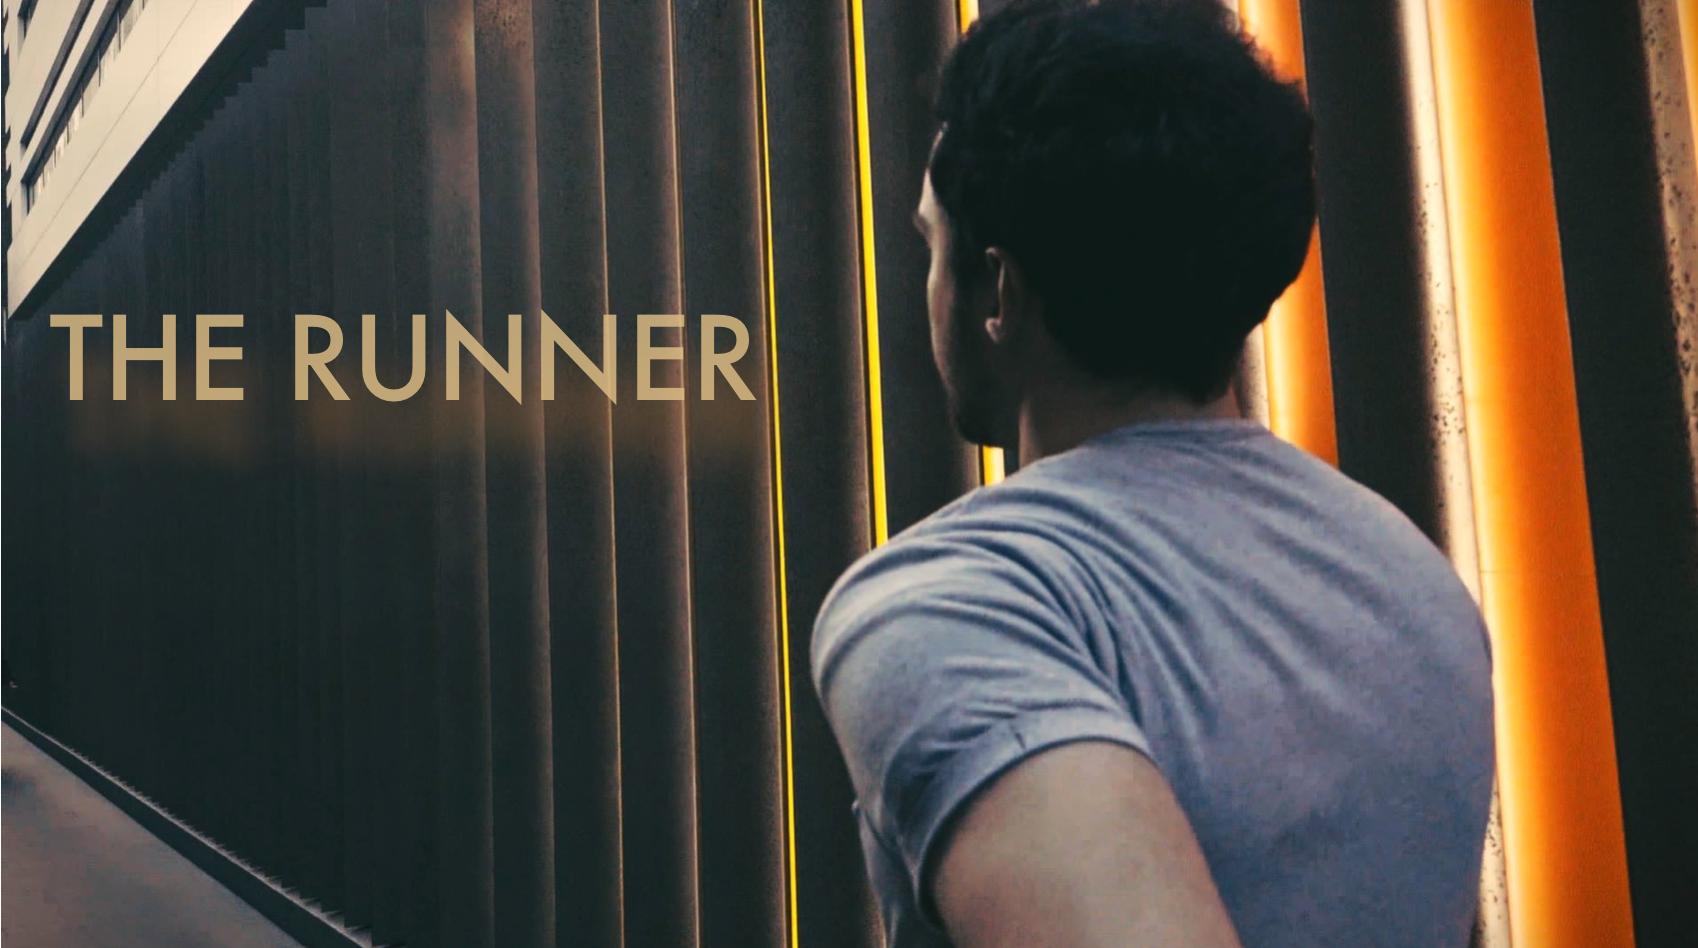 THE RUNNER (2018) Short Film